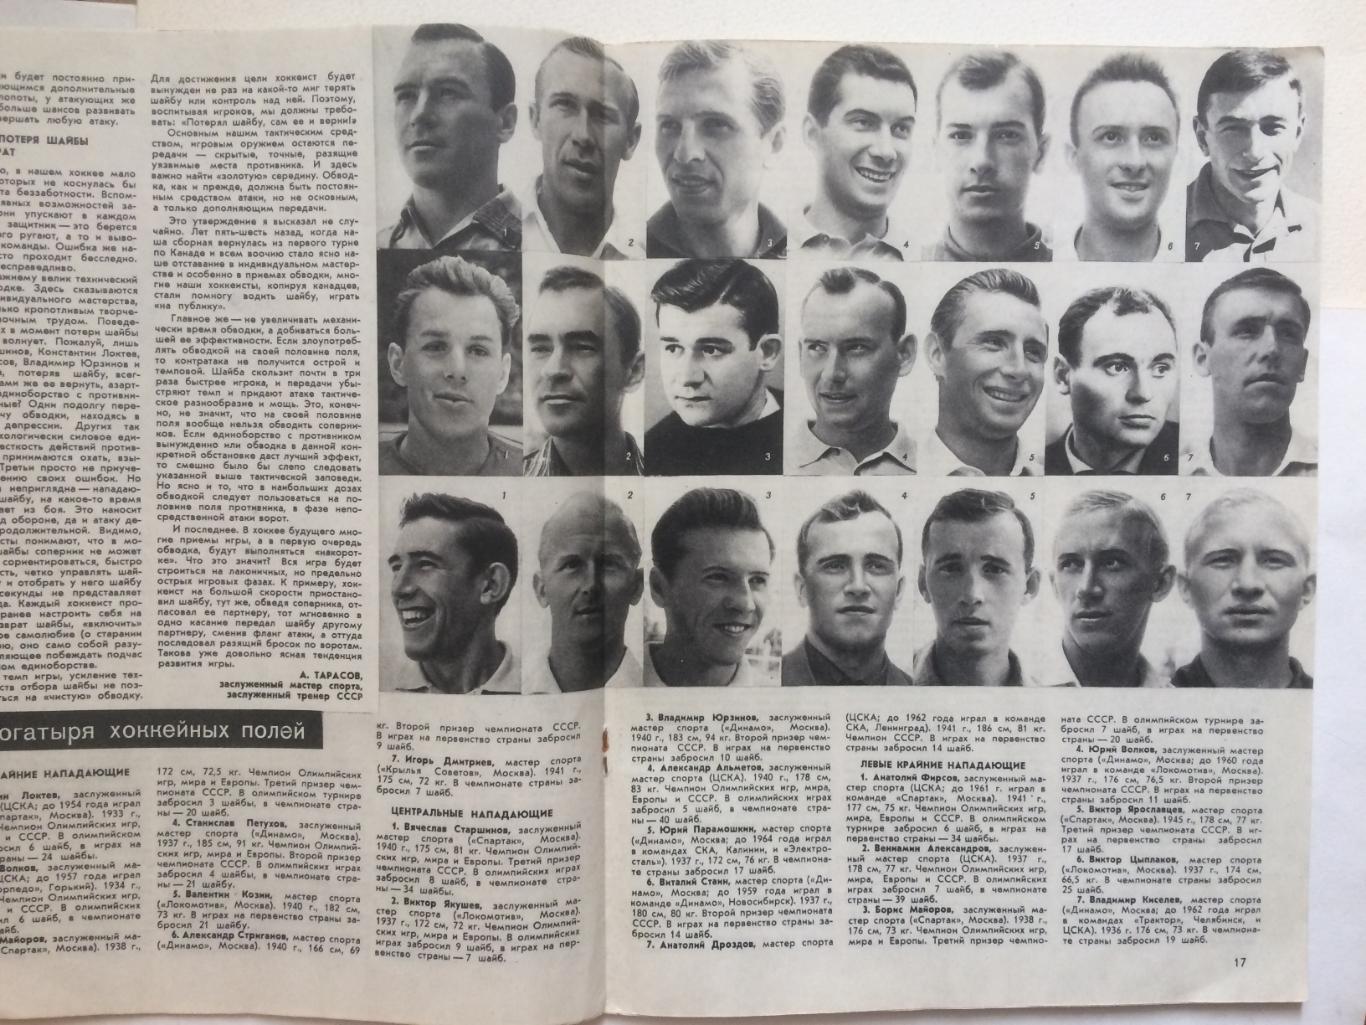 Журнал Спортивные игры №10 1964 Л.Яшин 1